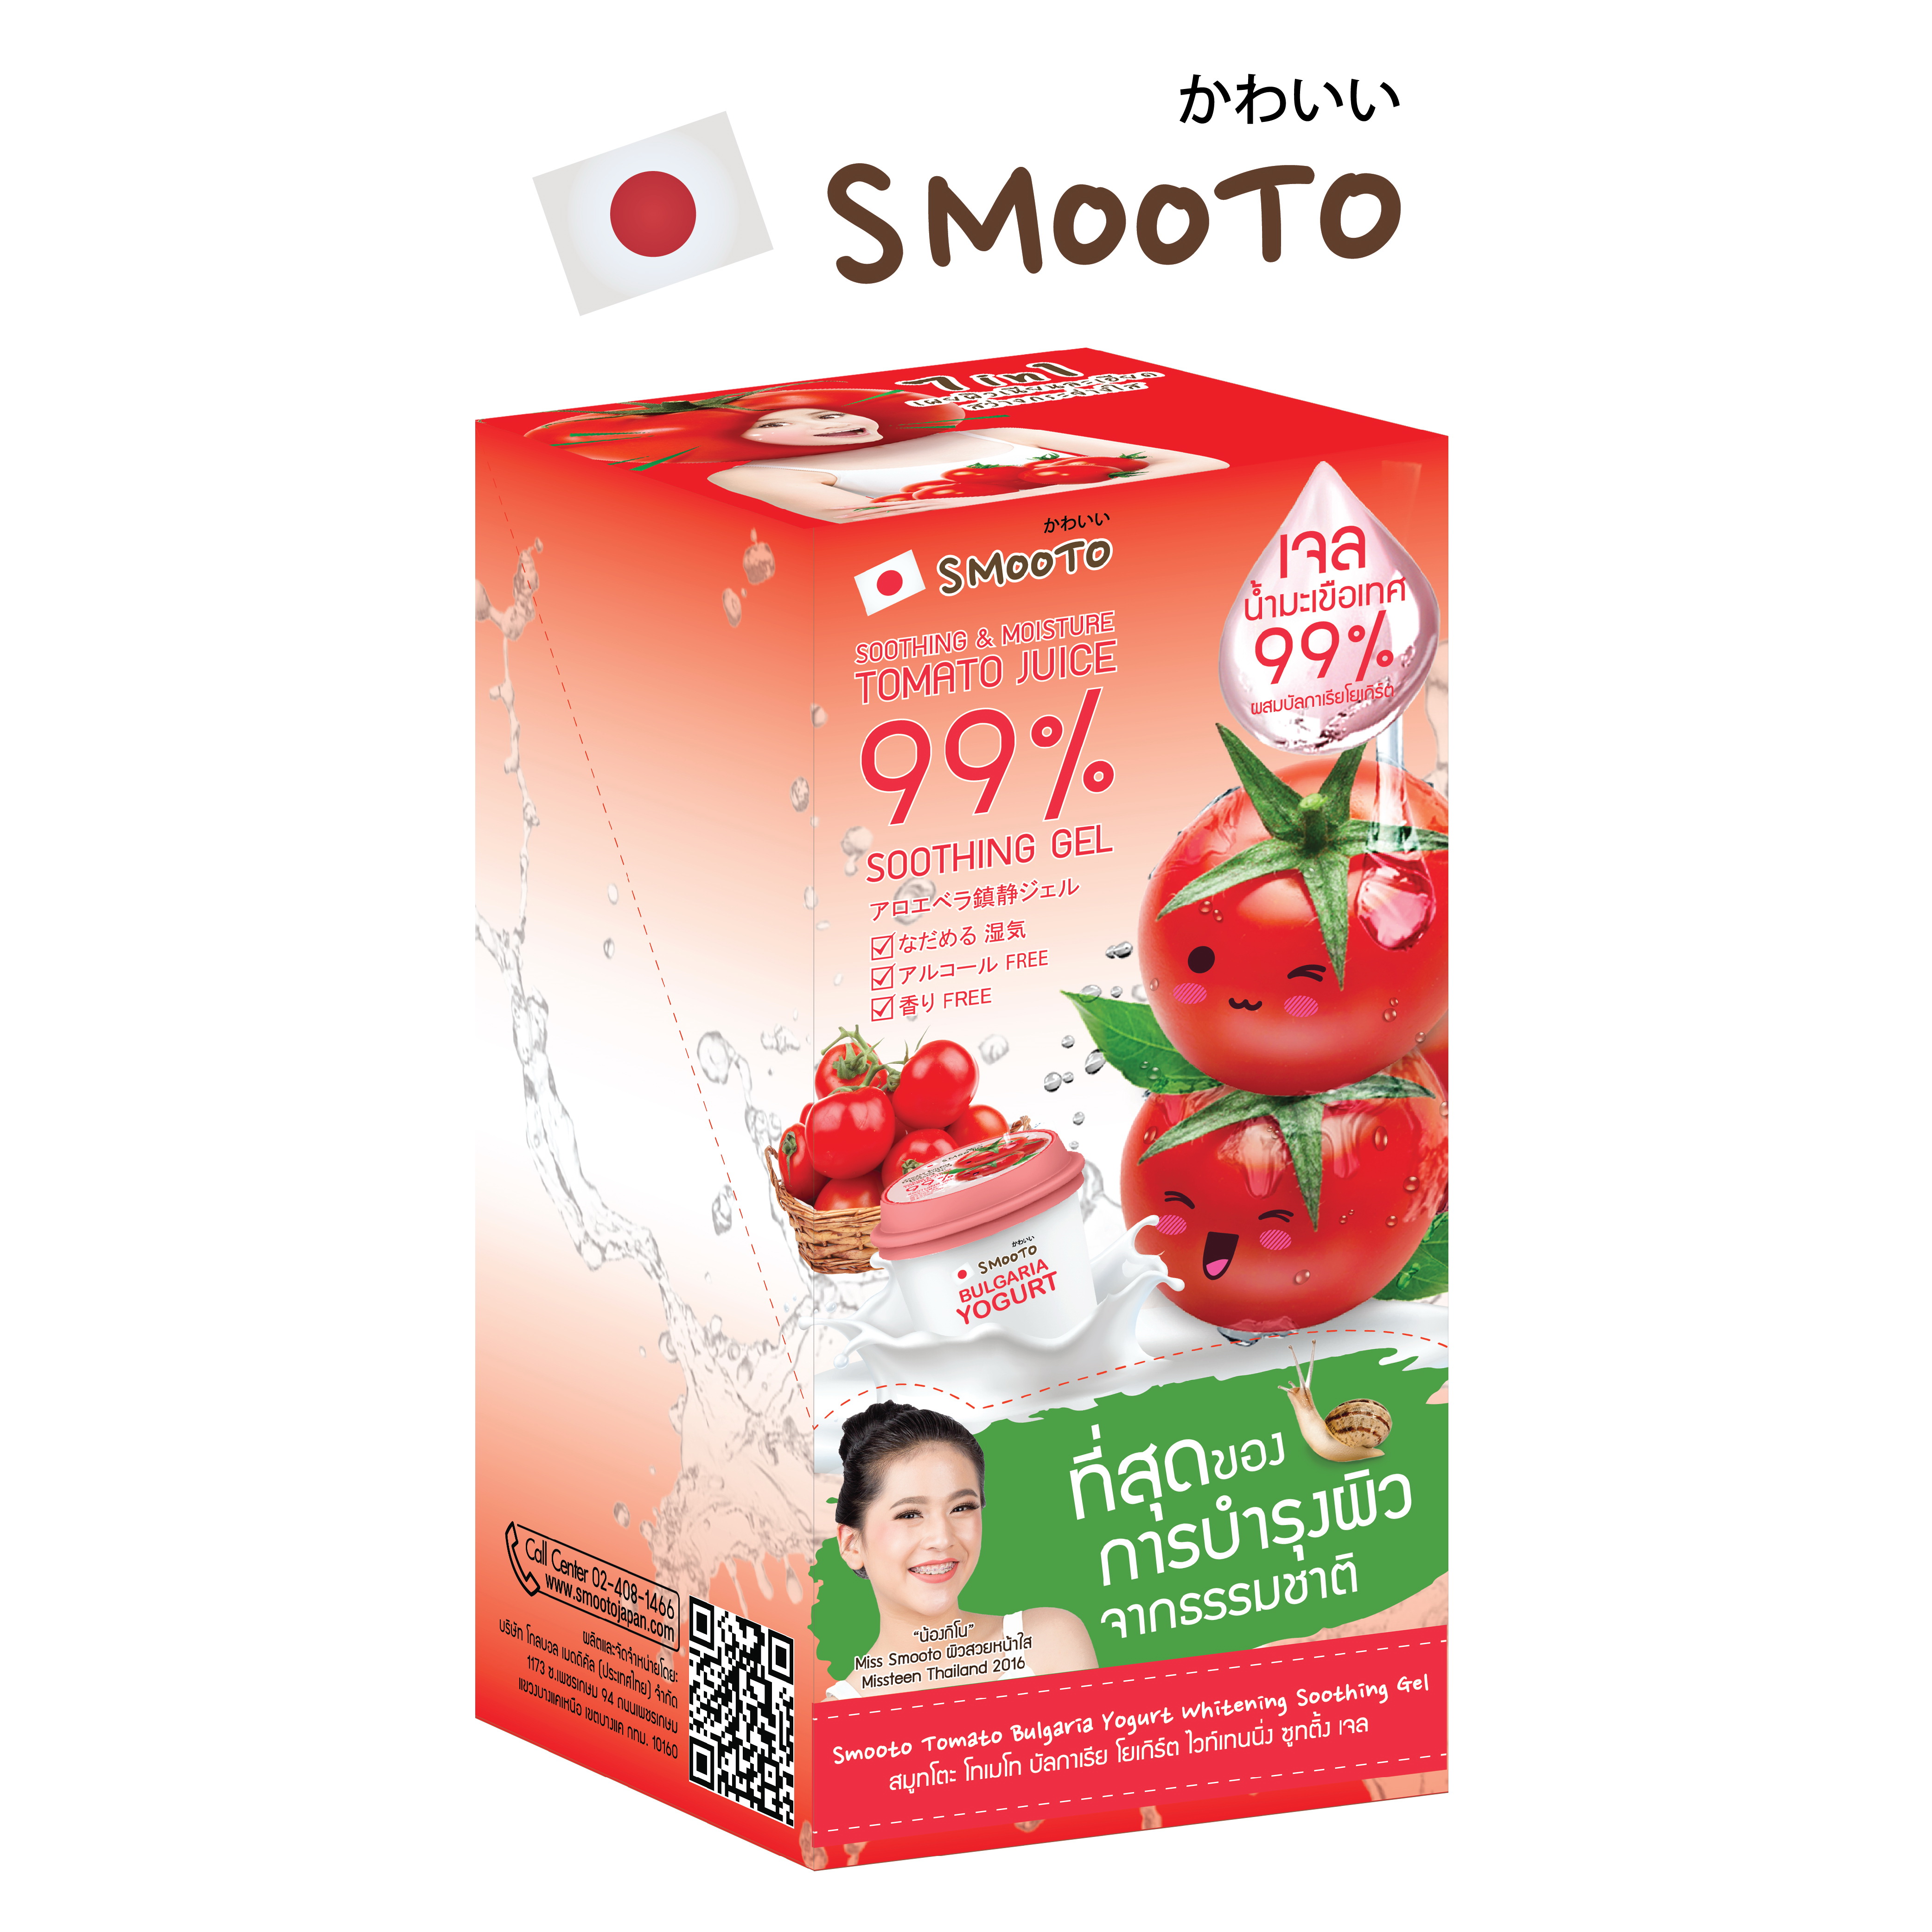 ซื้อที่ไหน SMOOTO Official สมูทโตะ โทเมโท บัลกาเรีย โยเกิร์ต ไวท์เทนนิ่ง ซูทติ้ง เจล Smooto Tomato Bulgaria Yogurt Whitening Soothing Gel เจลมะเขือเทศ ( 1 กล่องบรรจุ 6 ซอง )( 1 ซอง 40 กรัม )